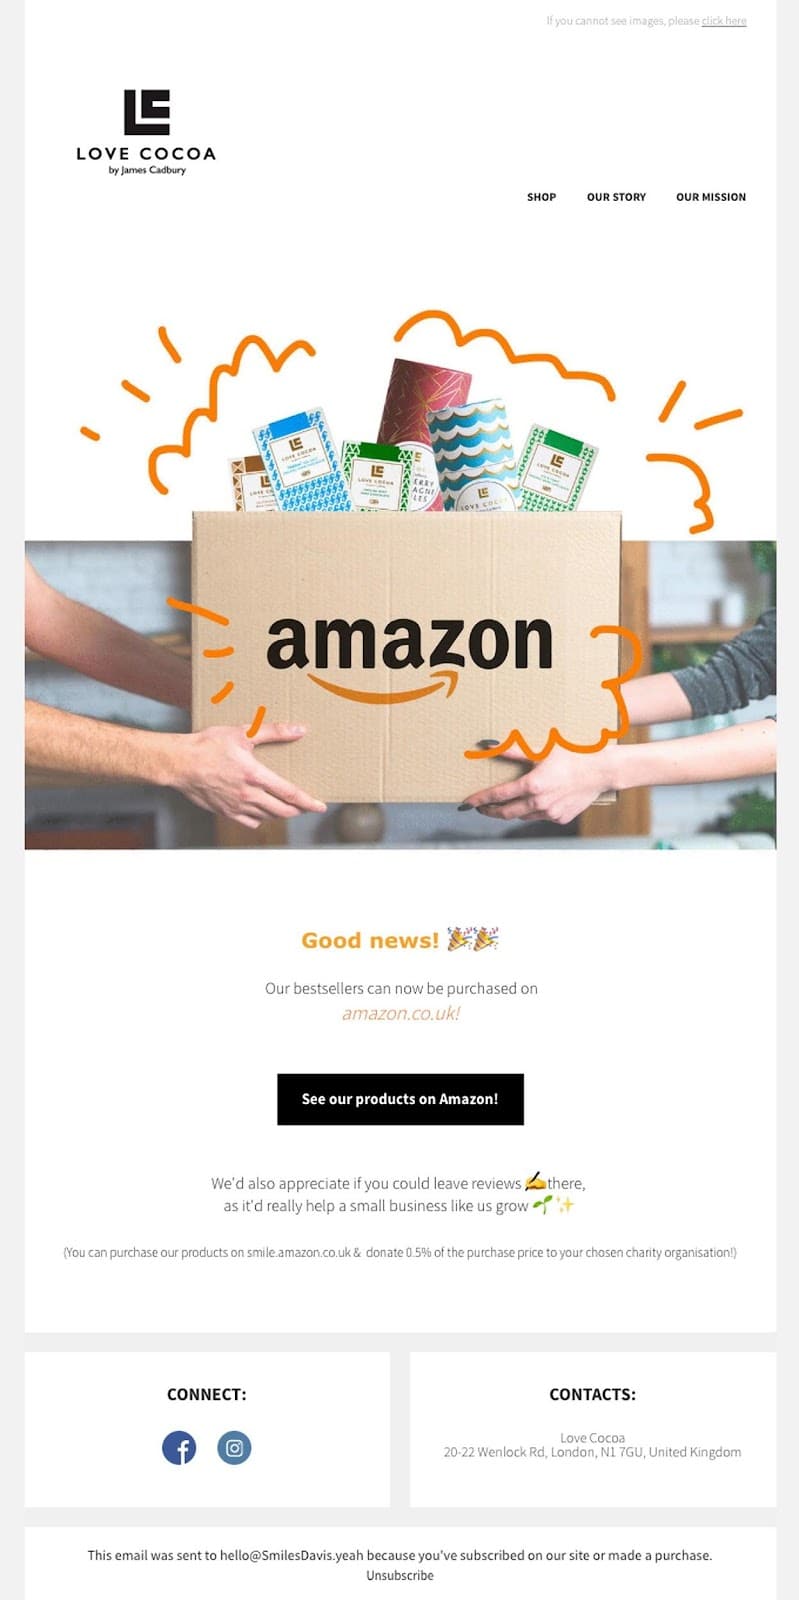 Love Cocoa’s Amazon UK availability